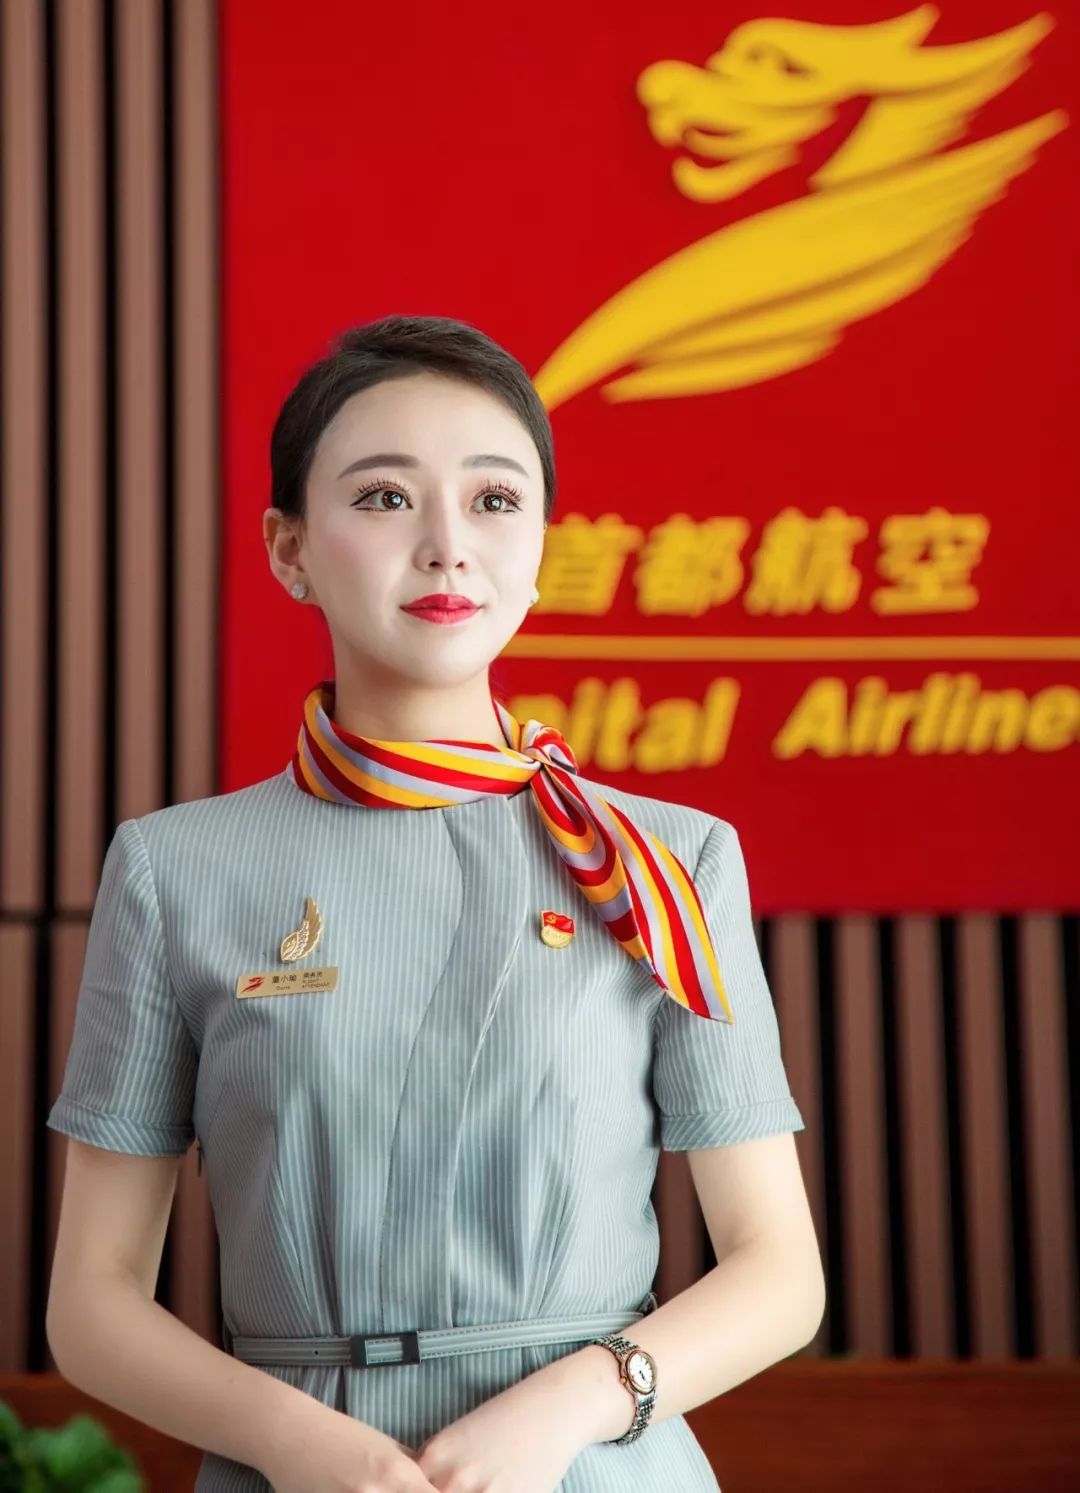 确保每一位乘客的飞行安全,北京首都航空对空姐们的要求十分严格